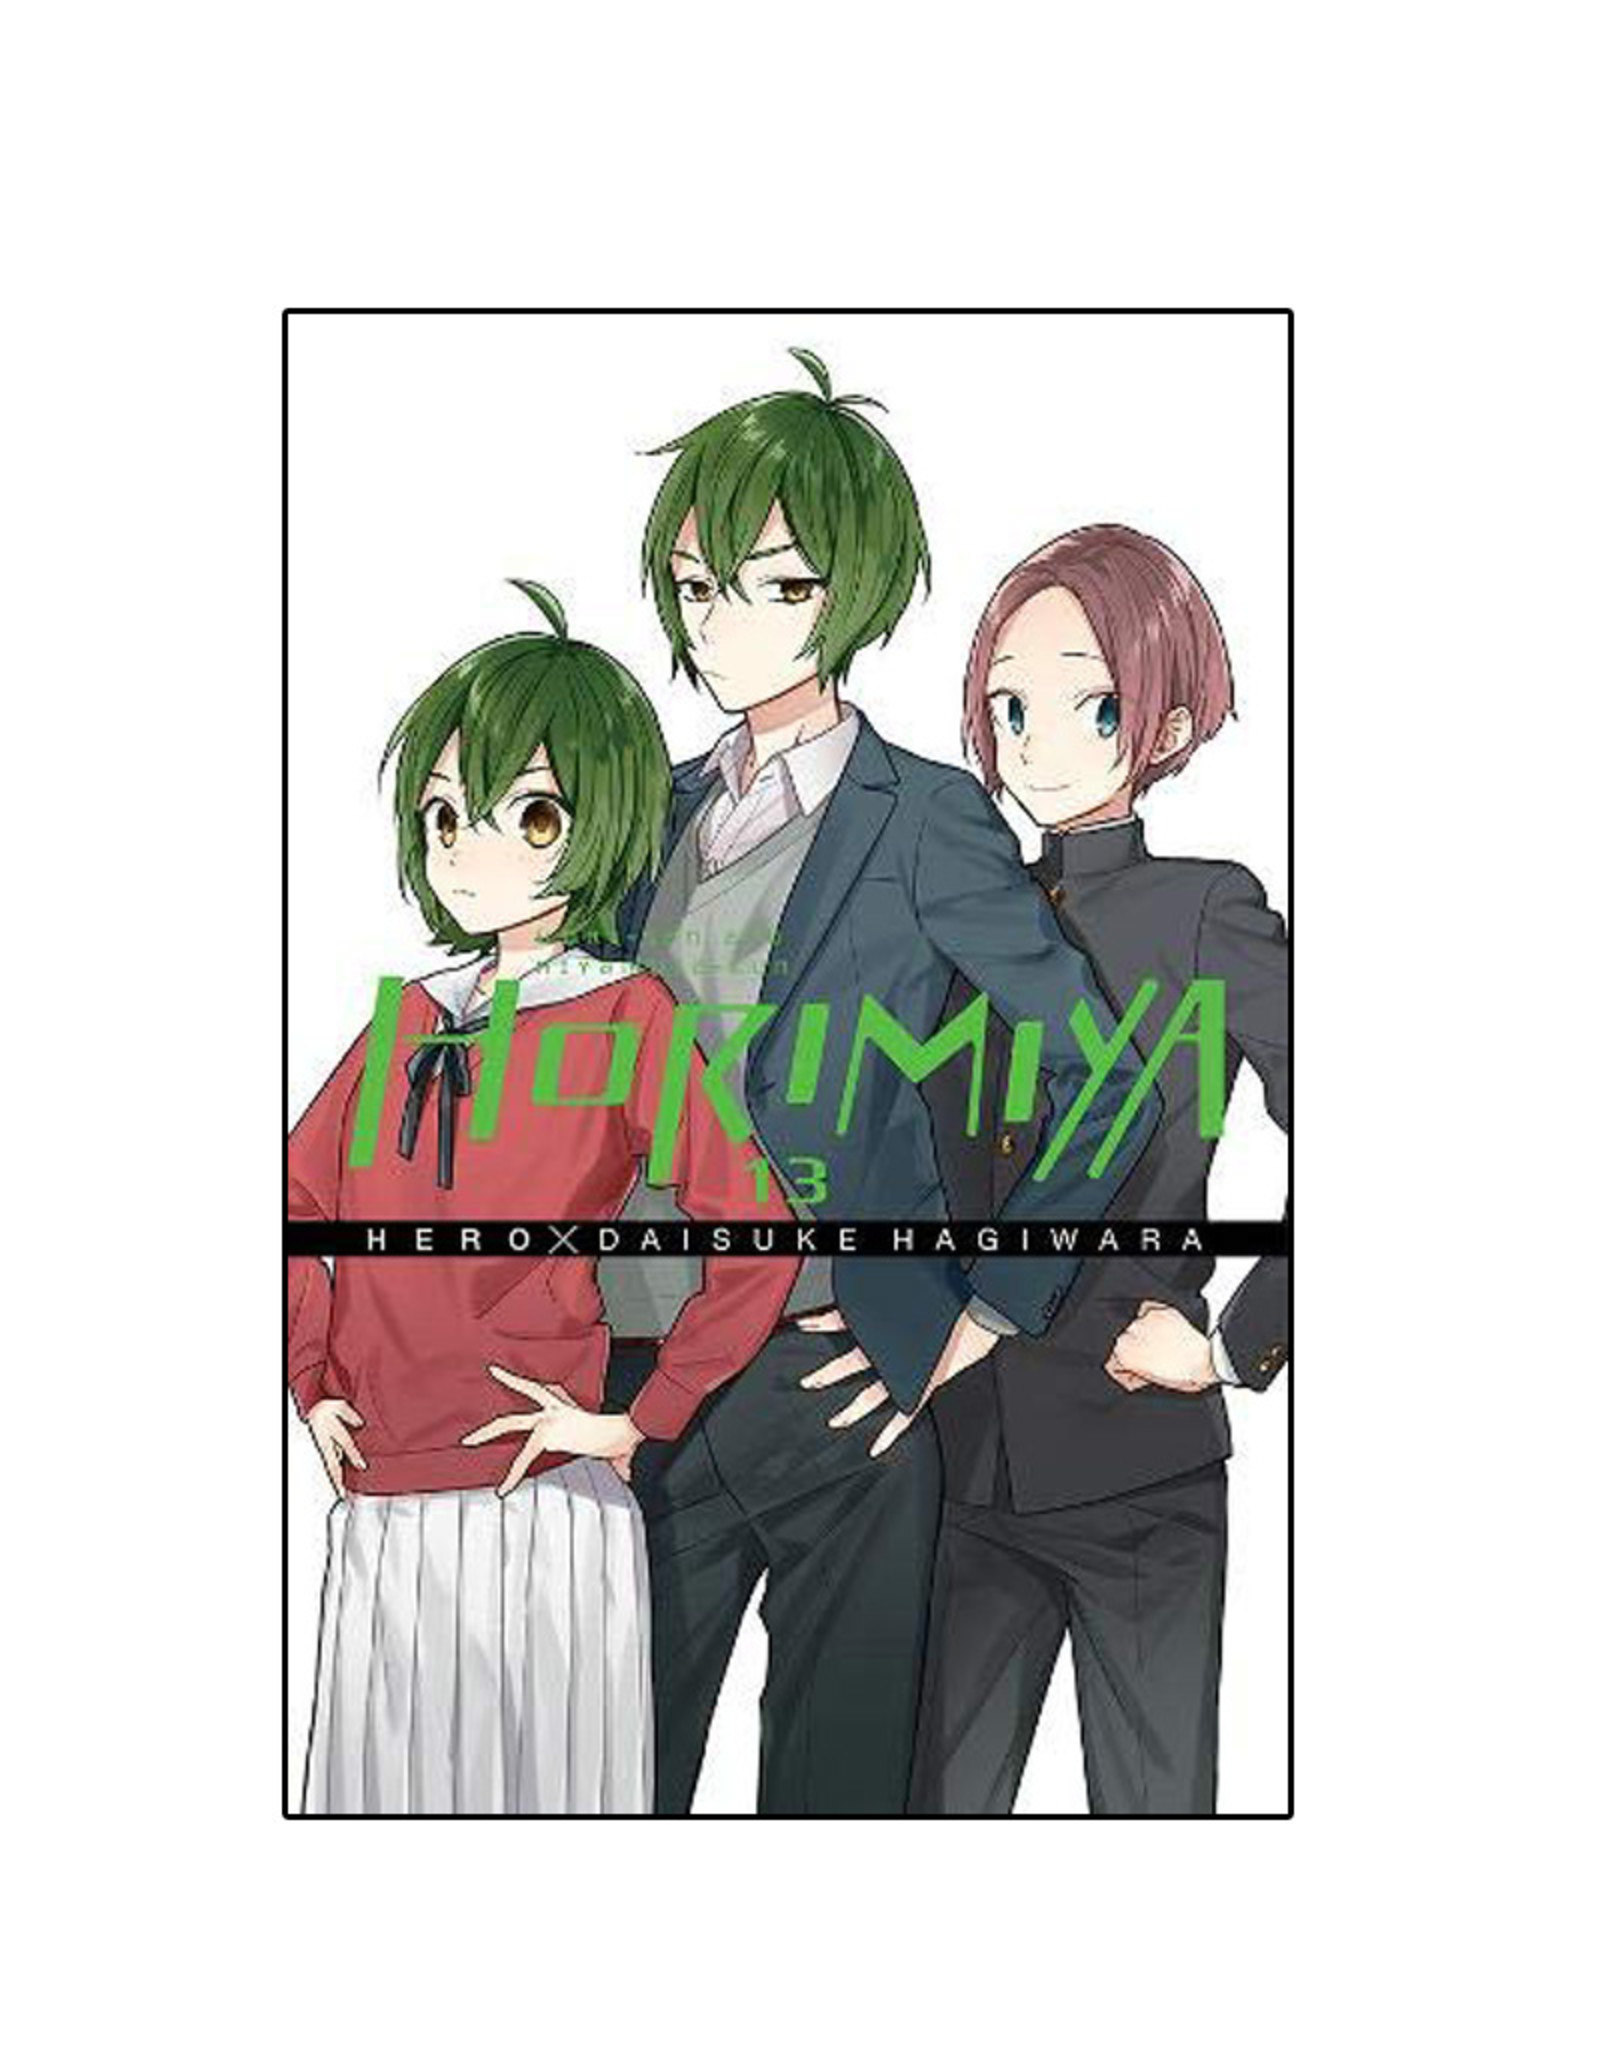 Yen Press Horimiya Volume 13